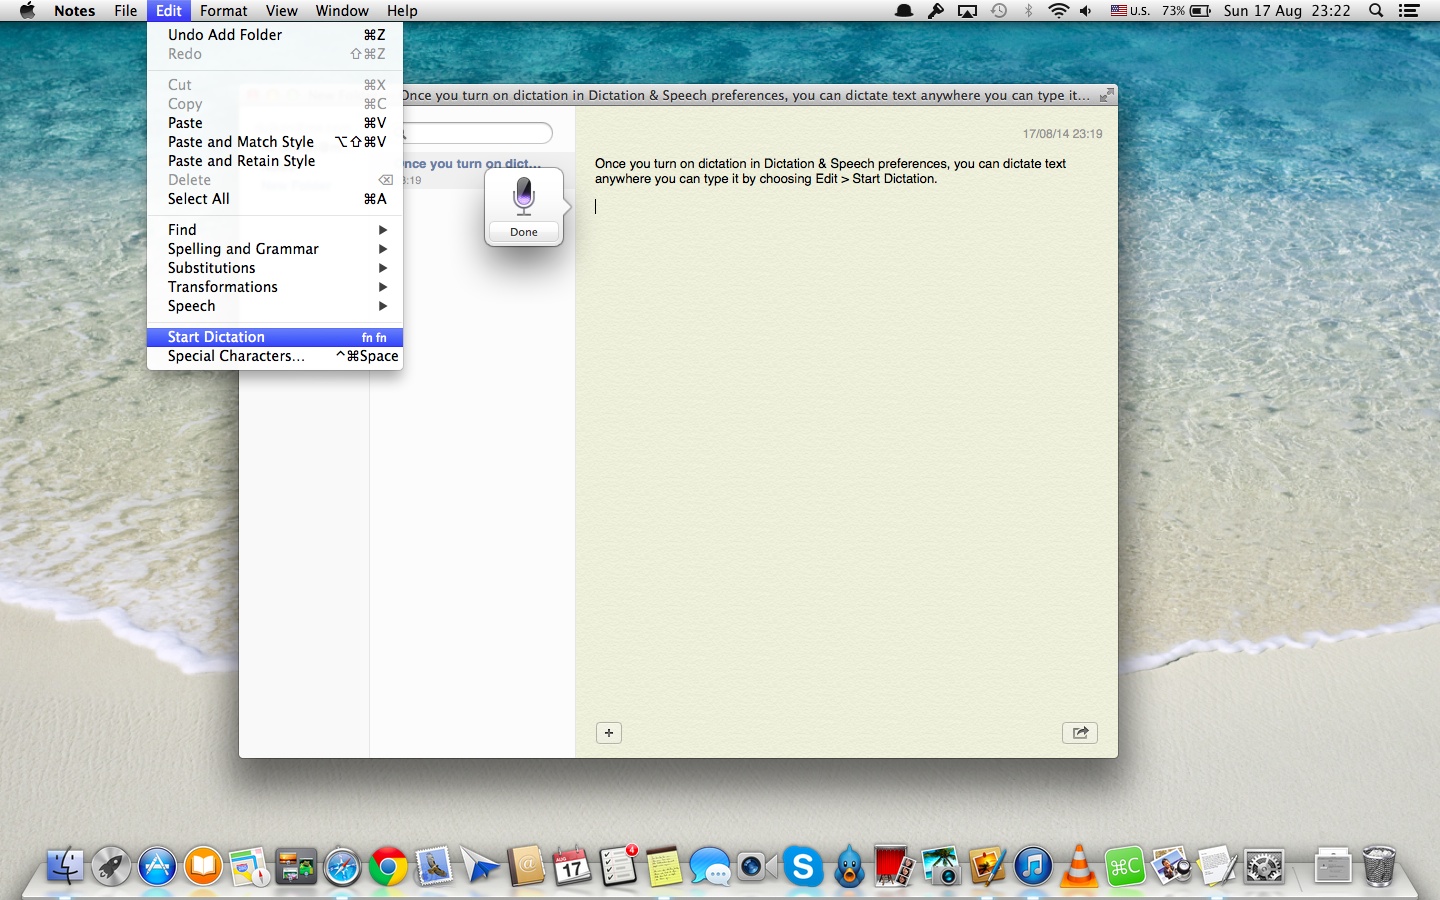 OS X Mavericks (how to Enhanced Dictation, System Preferences, Dictation and Speech 013)